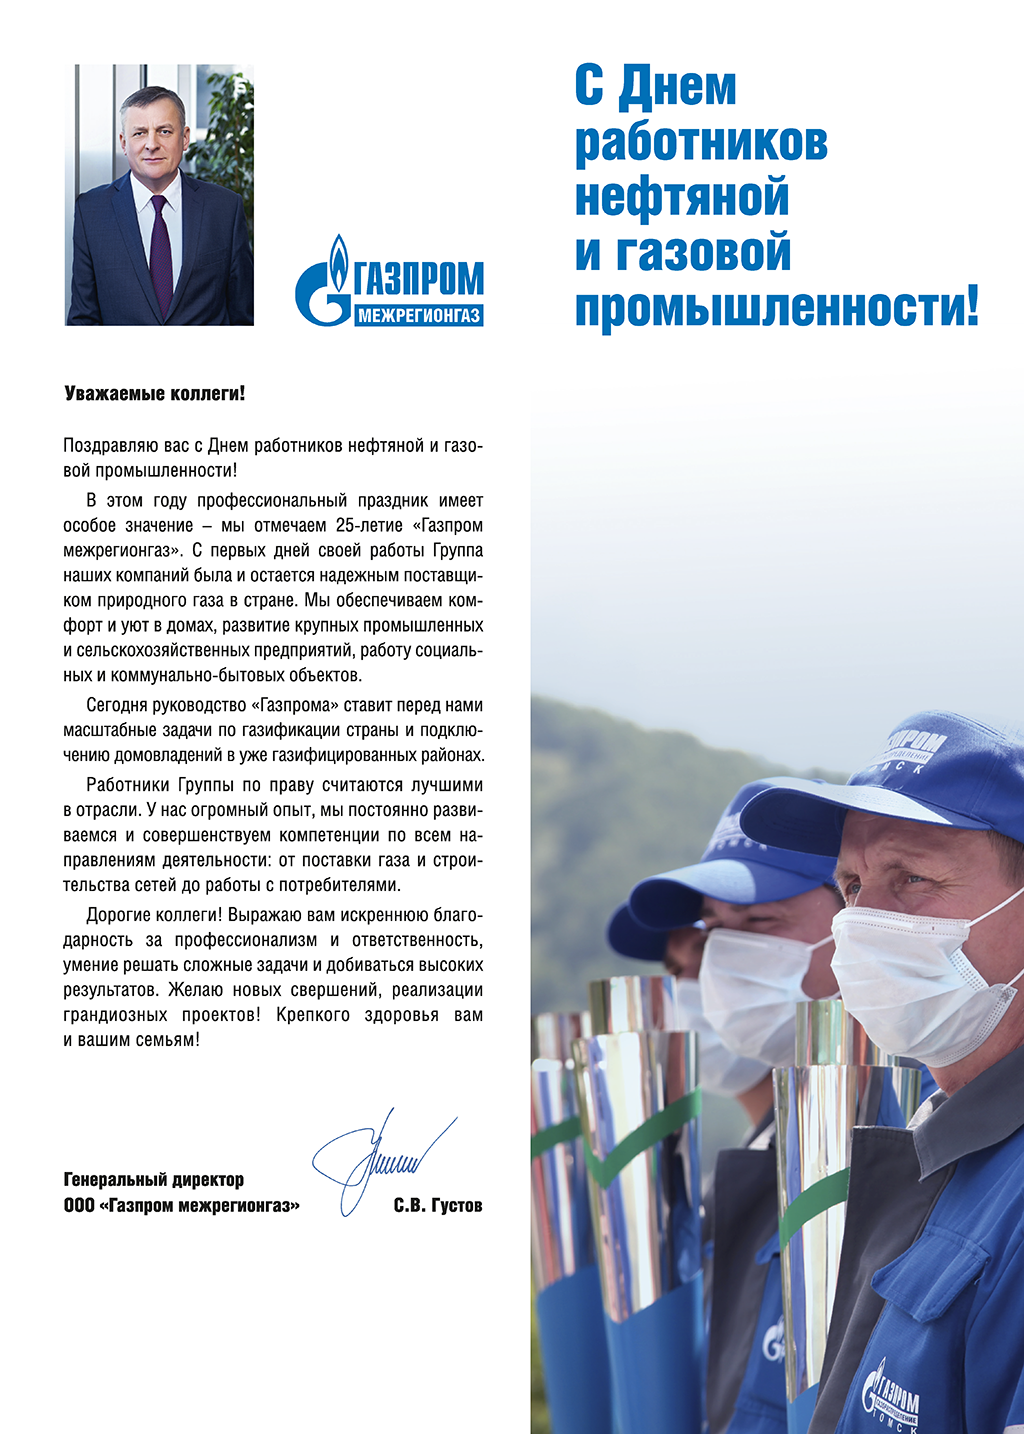 Поздравление с Днем работников нефтяной и газовой промышленности генерального директора «Газпром межрегионгаз» Сергея Густова